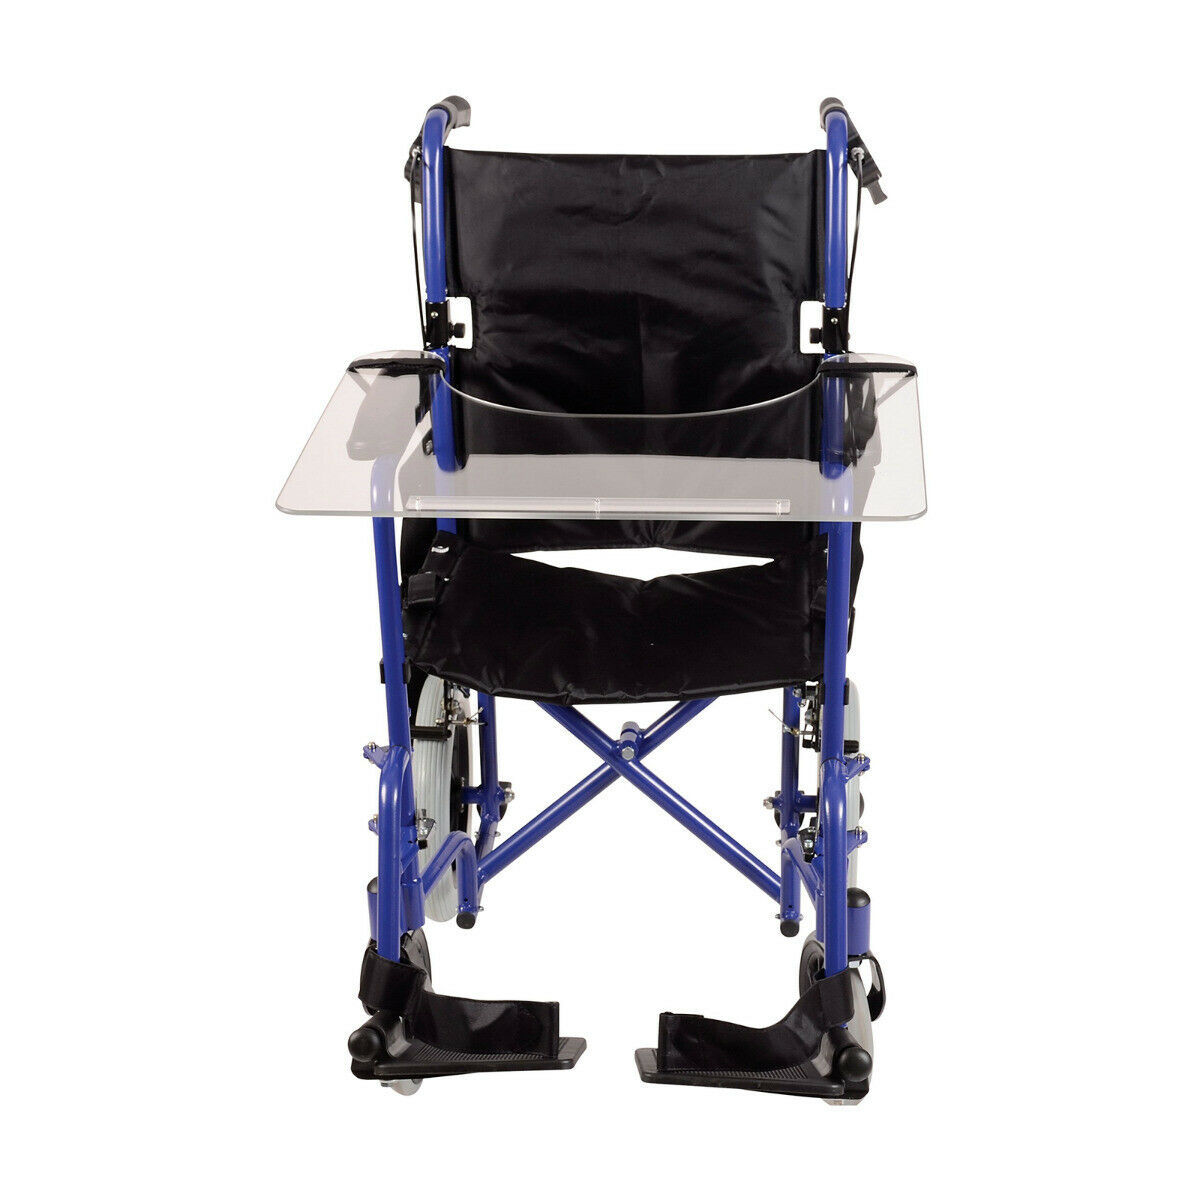 Съемный столик для инвалидных колясок арт. Ca051